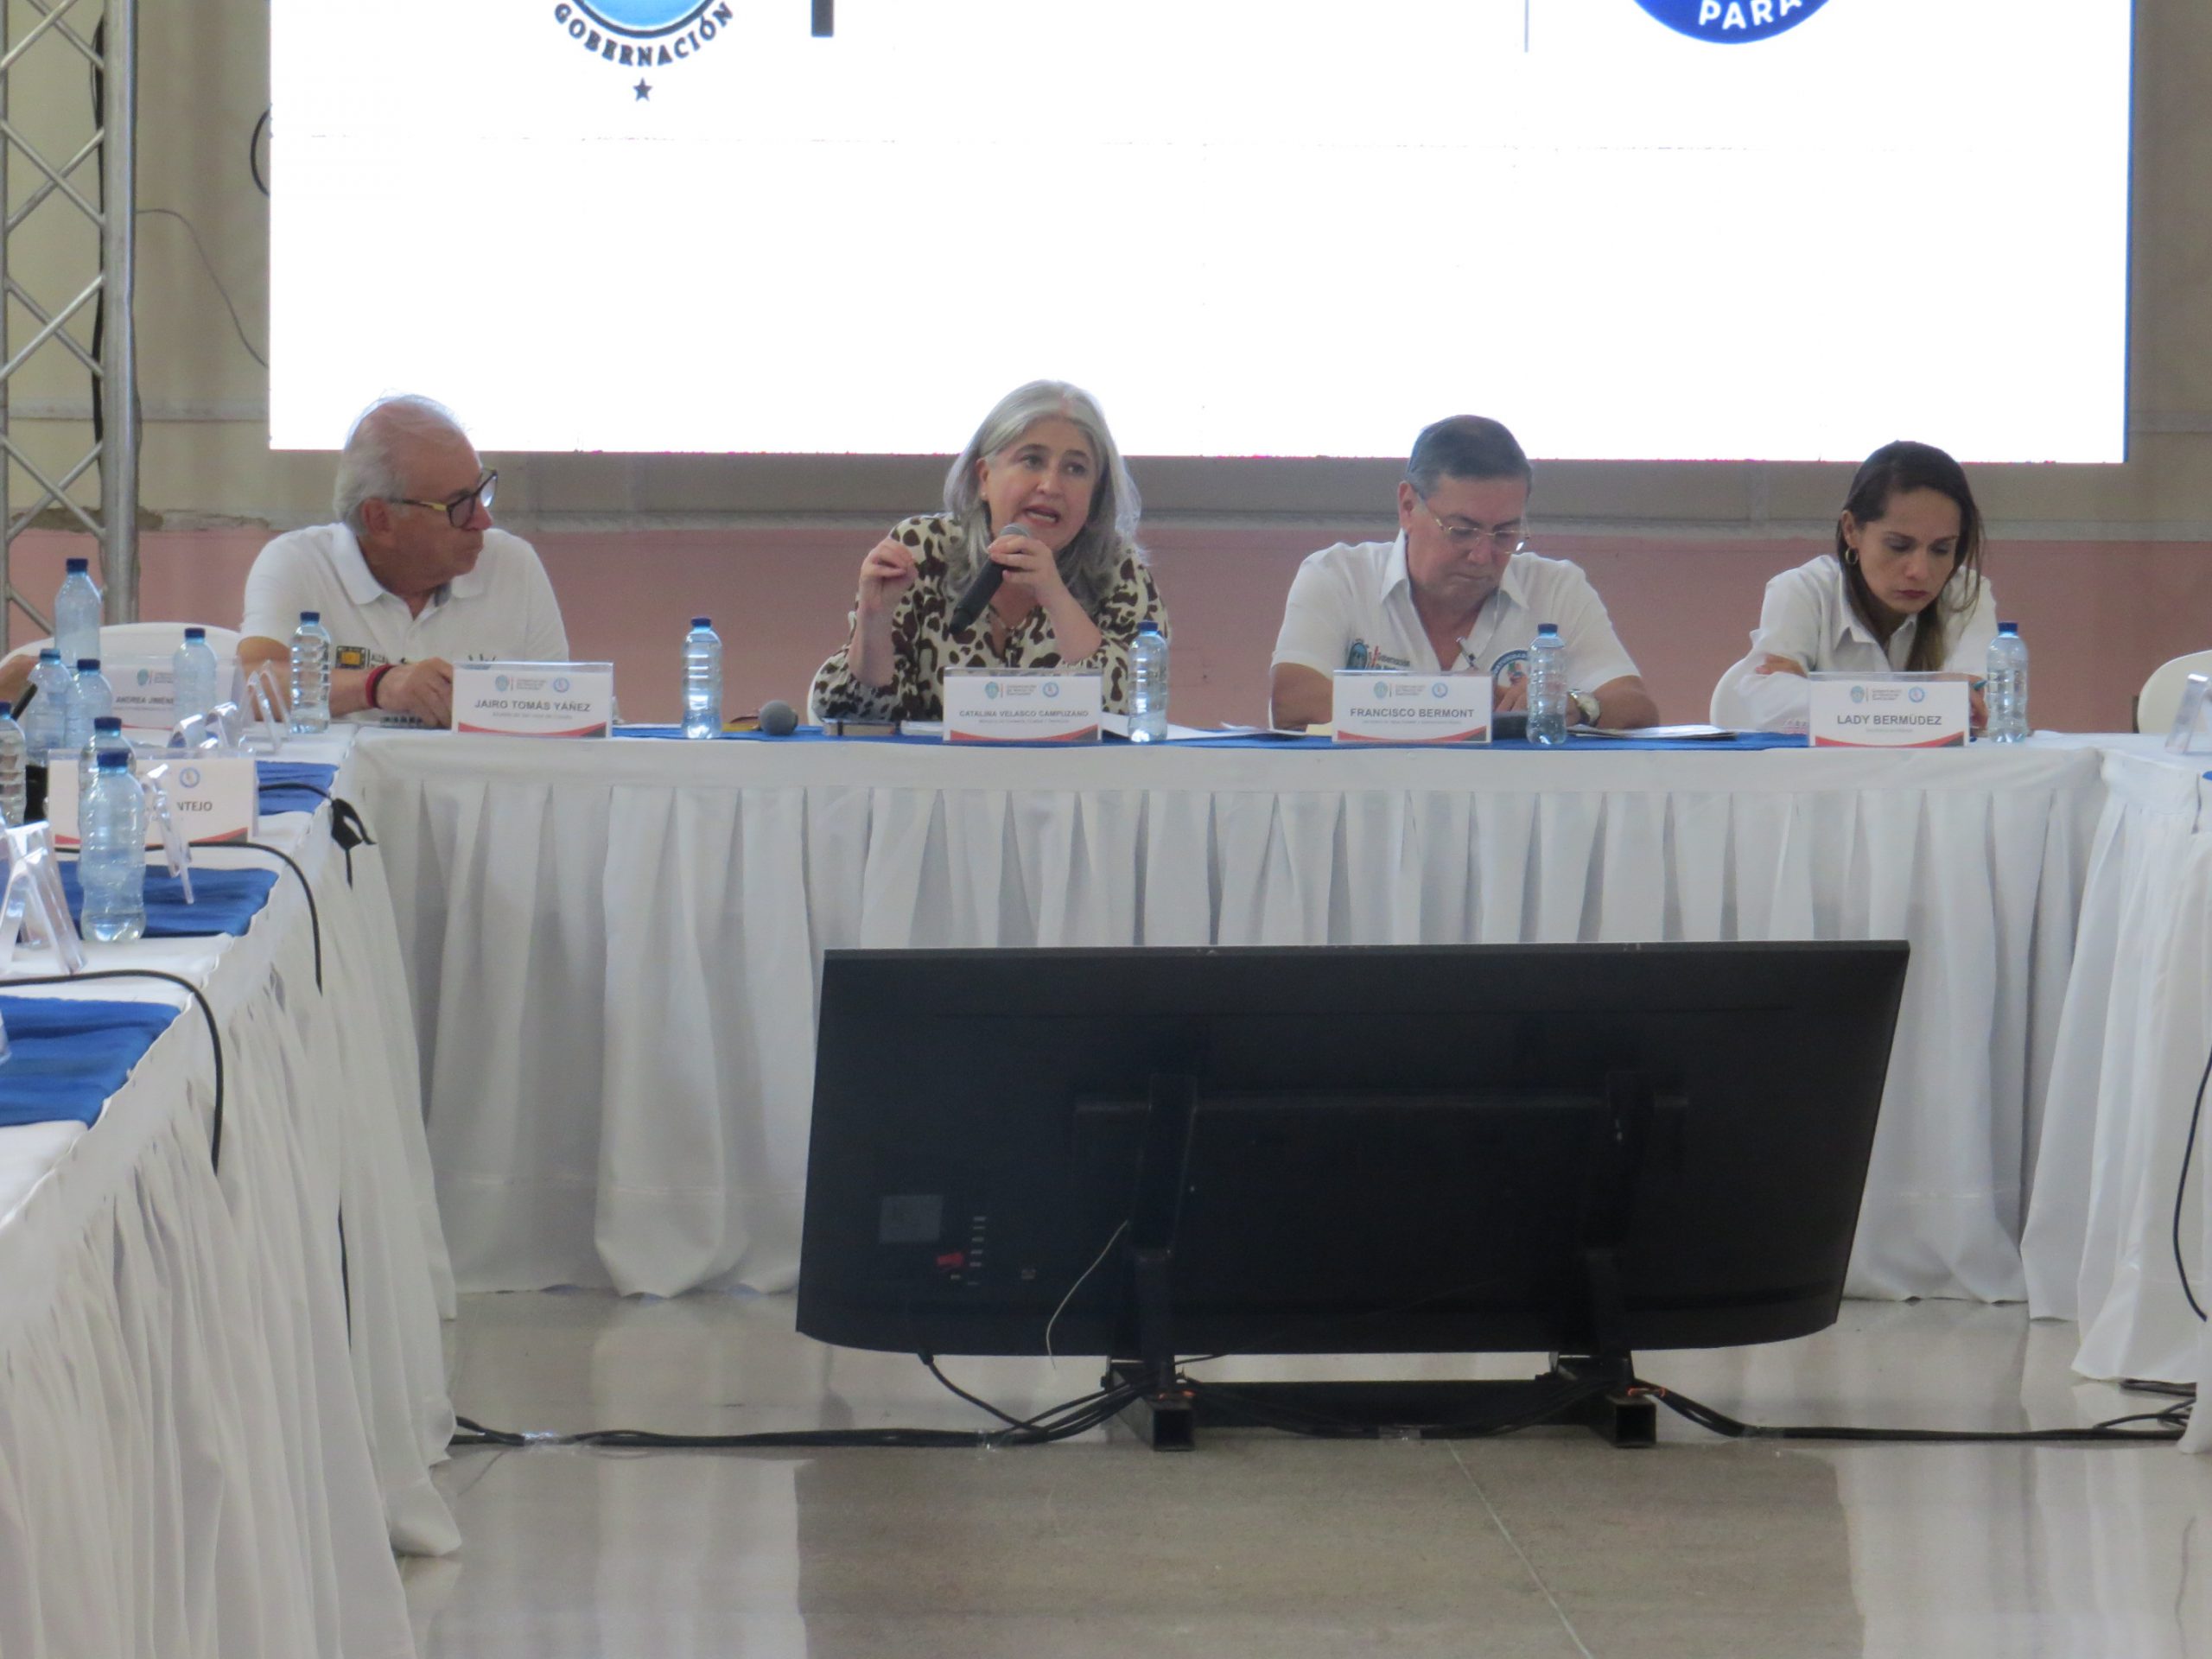 Minvivienda y alcaldes de Norte de Santander articulan esfuerzos en materia de agua y vivienda